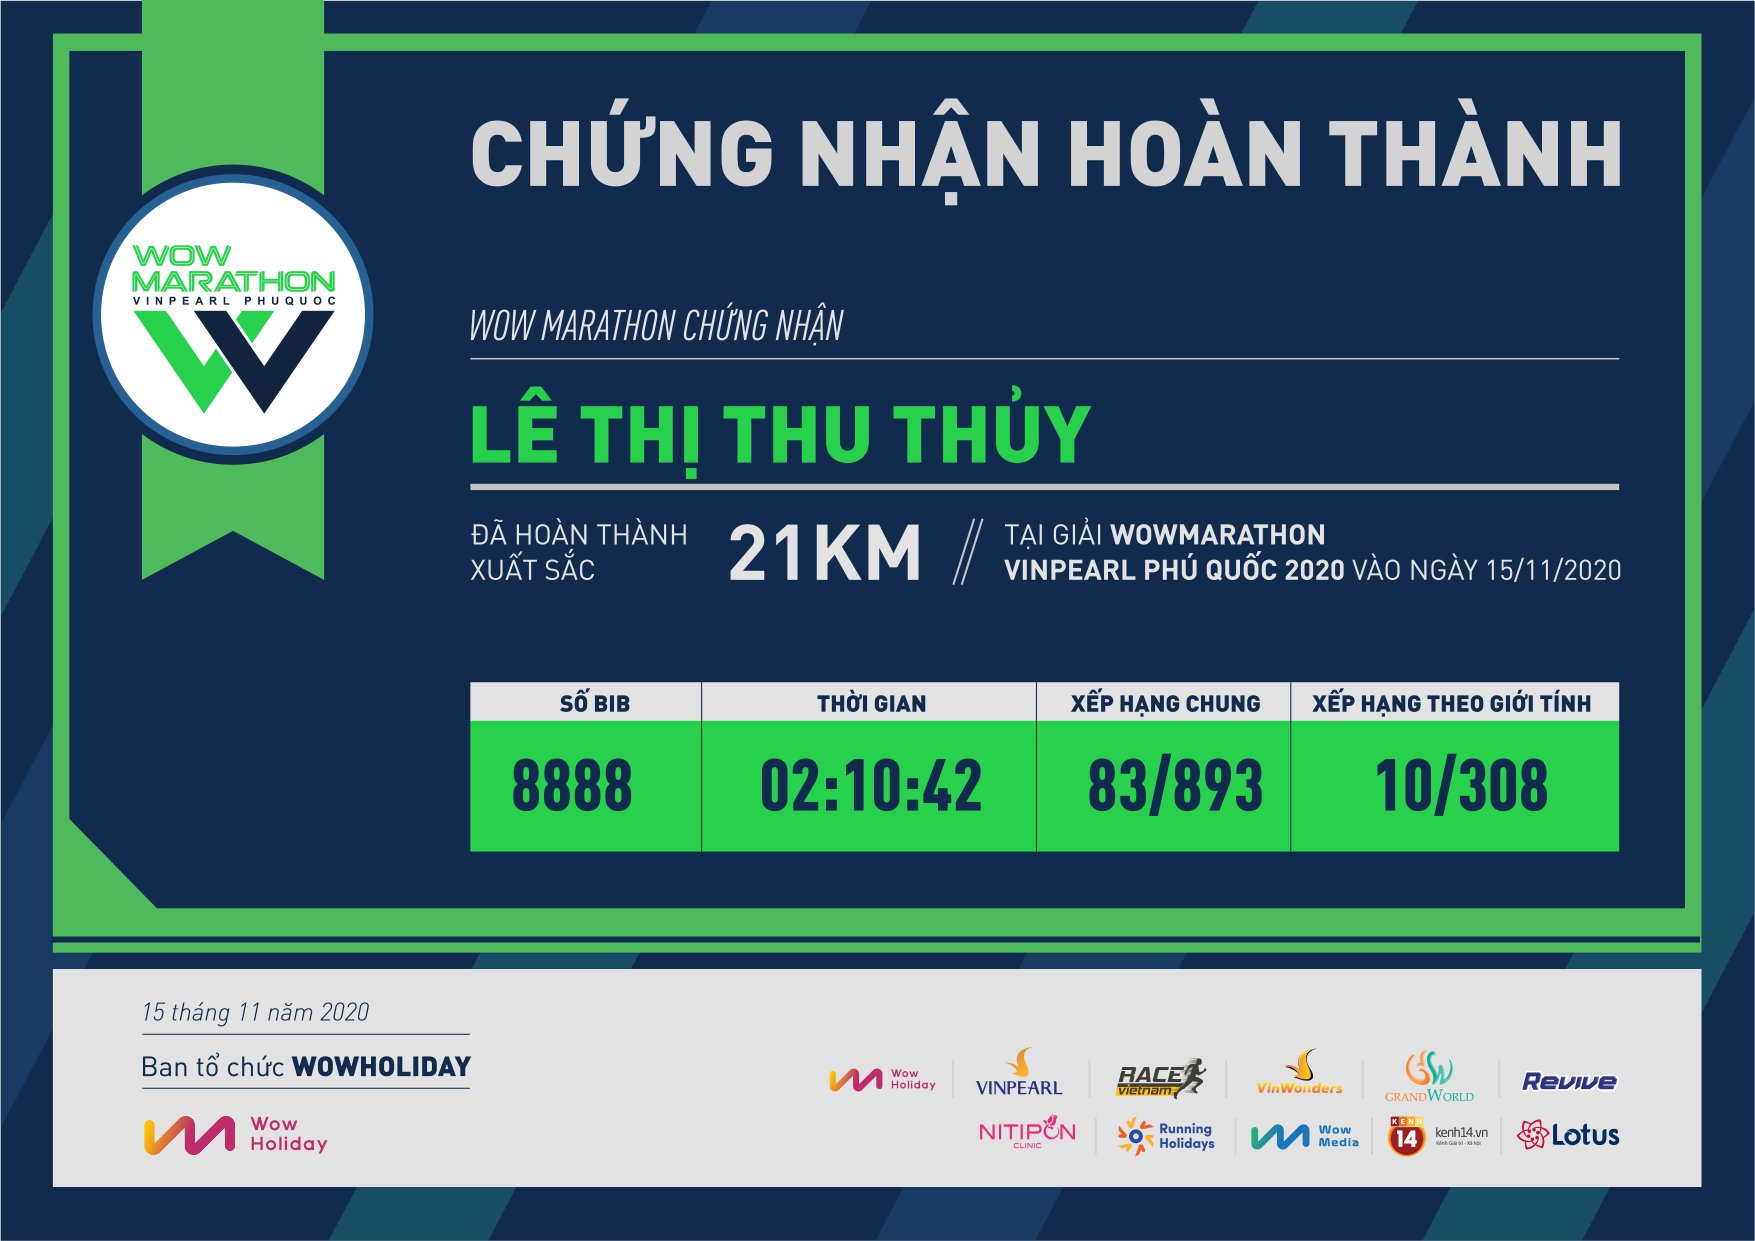 8888 - Lê Thị Thu Thủy